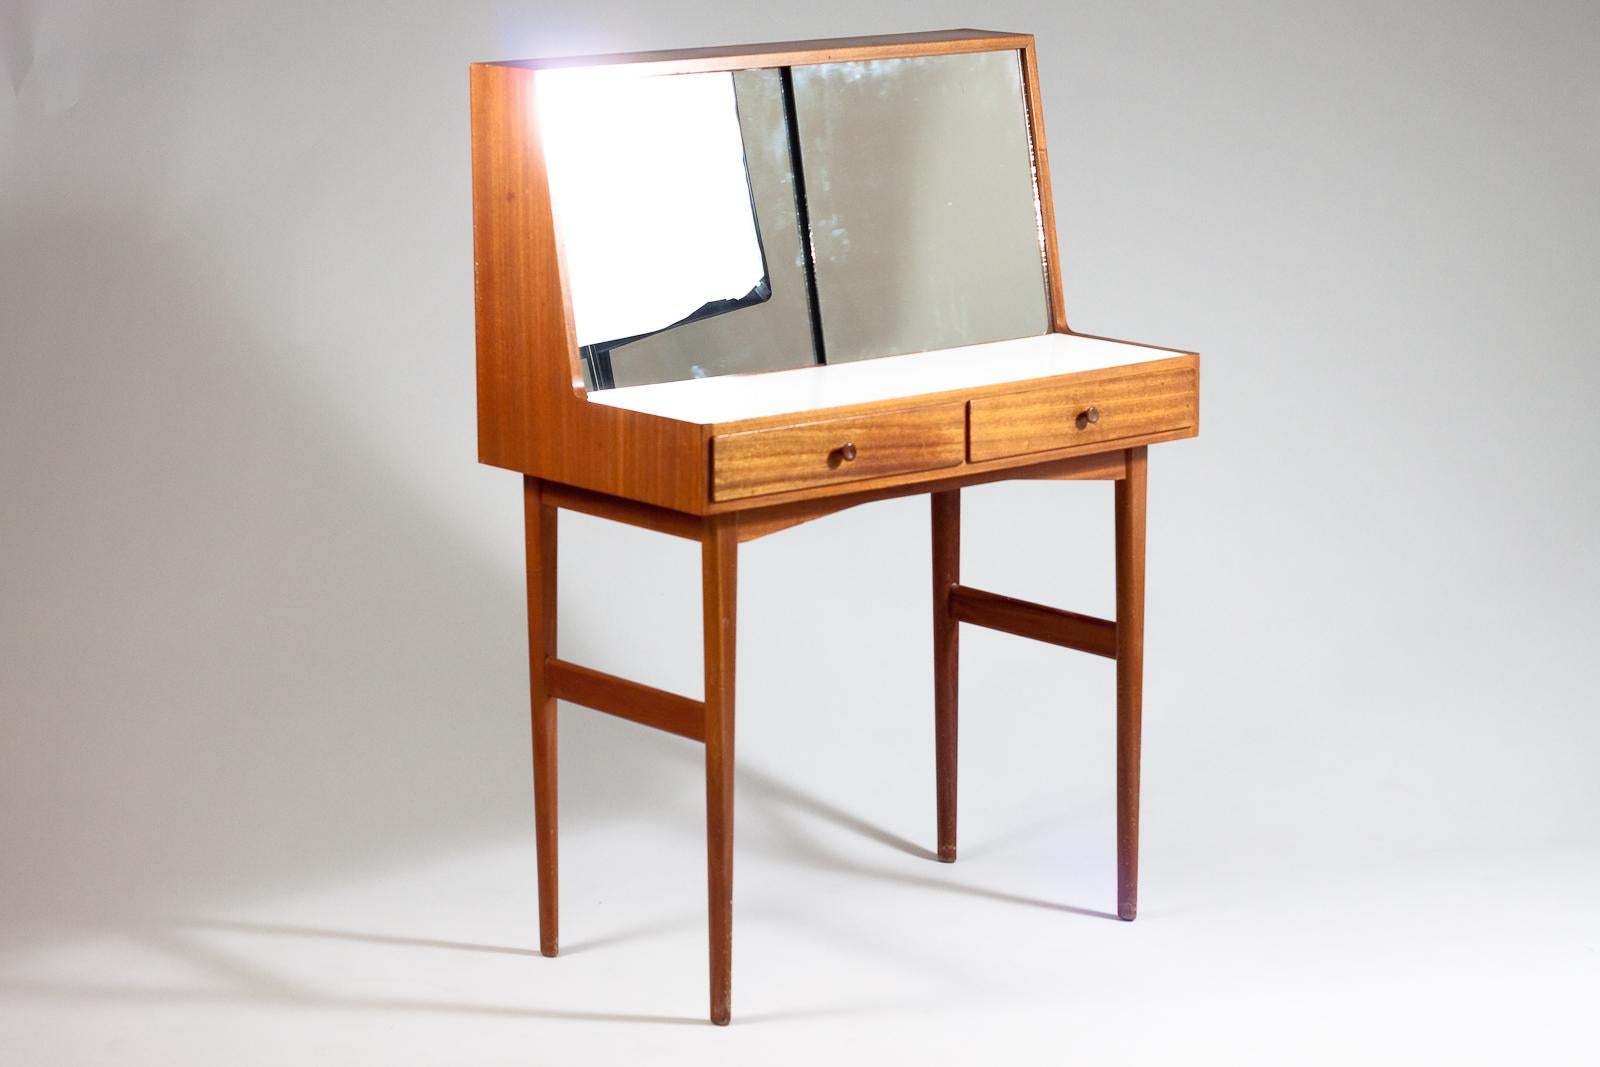 Stilvoller Mid-Century Modern-Schreibtisch mit zwei Schubladen aus Mahagoni. Zwei Schiebespiegel, die zwei Glasablagen zur Aufbewahrung von Make-up und anderen notwendigen Dingen abdecken.